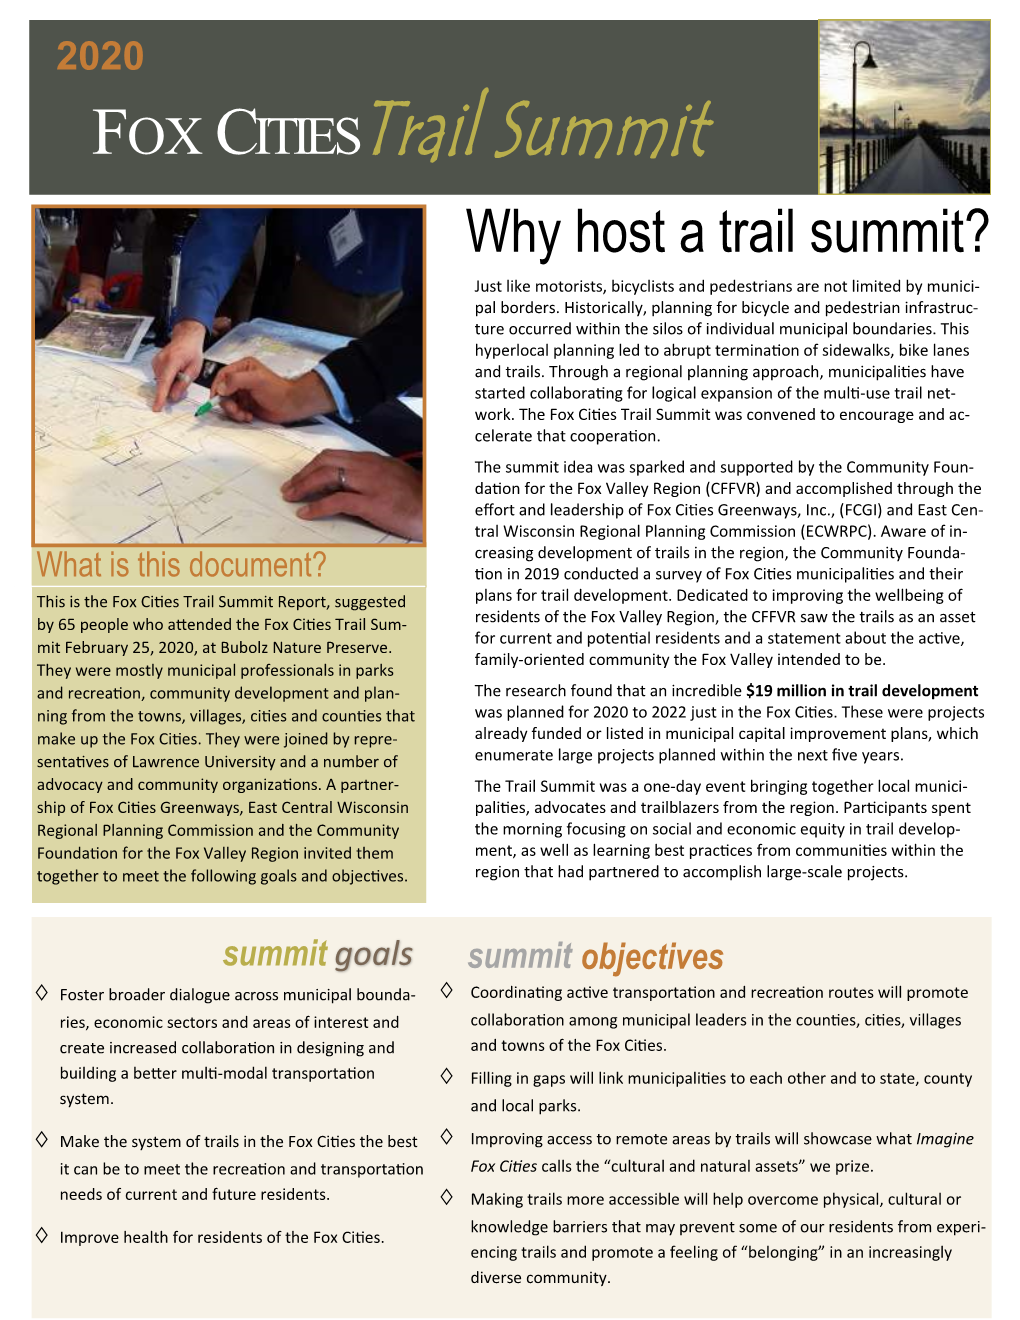 2020 Fox Cities Trail Summit Report